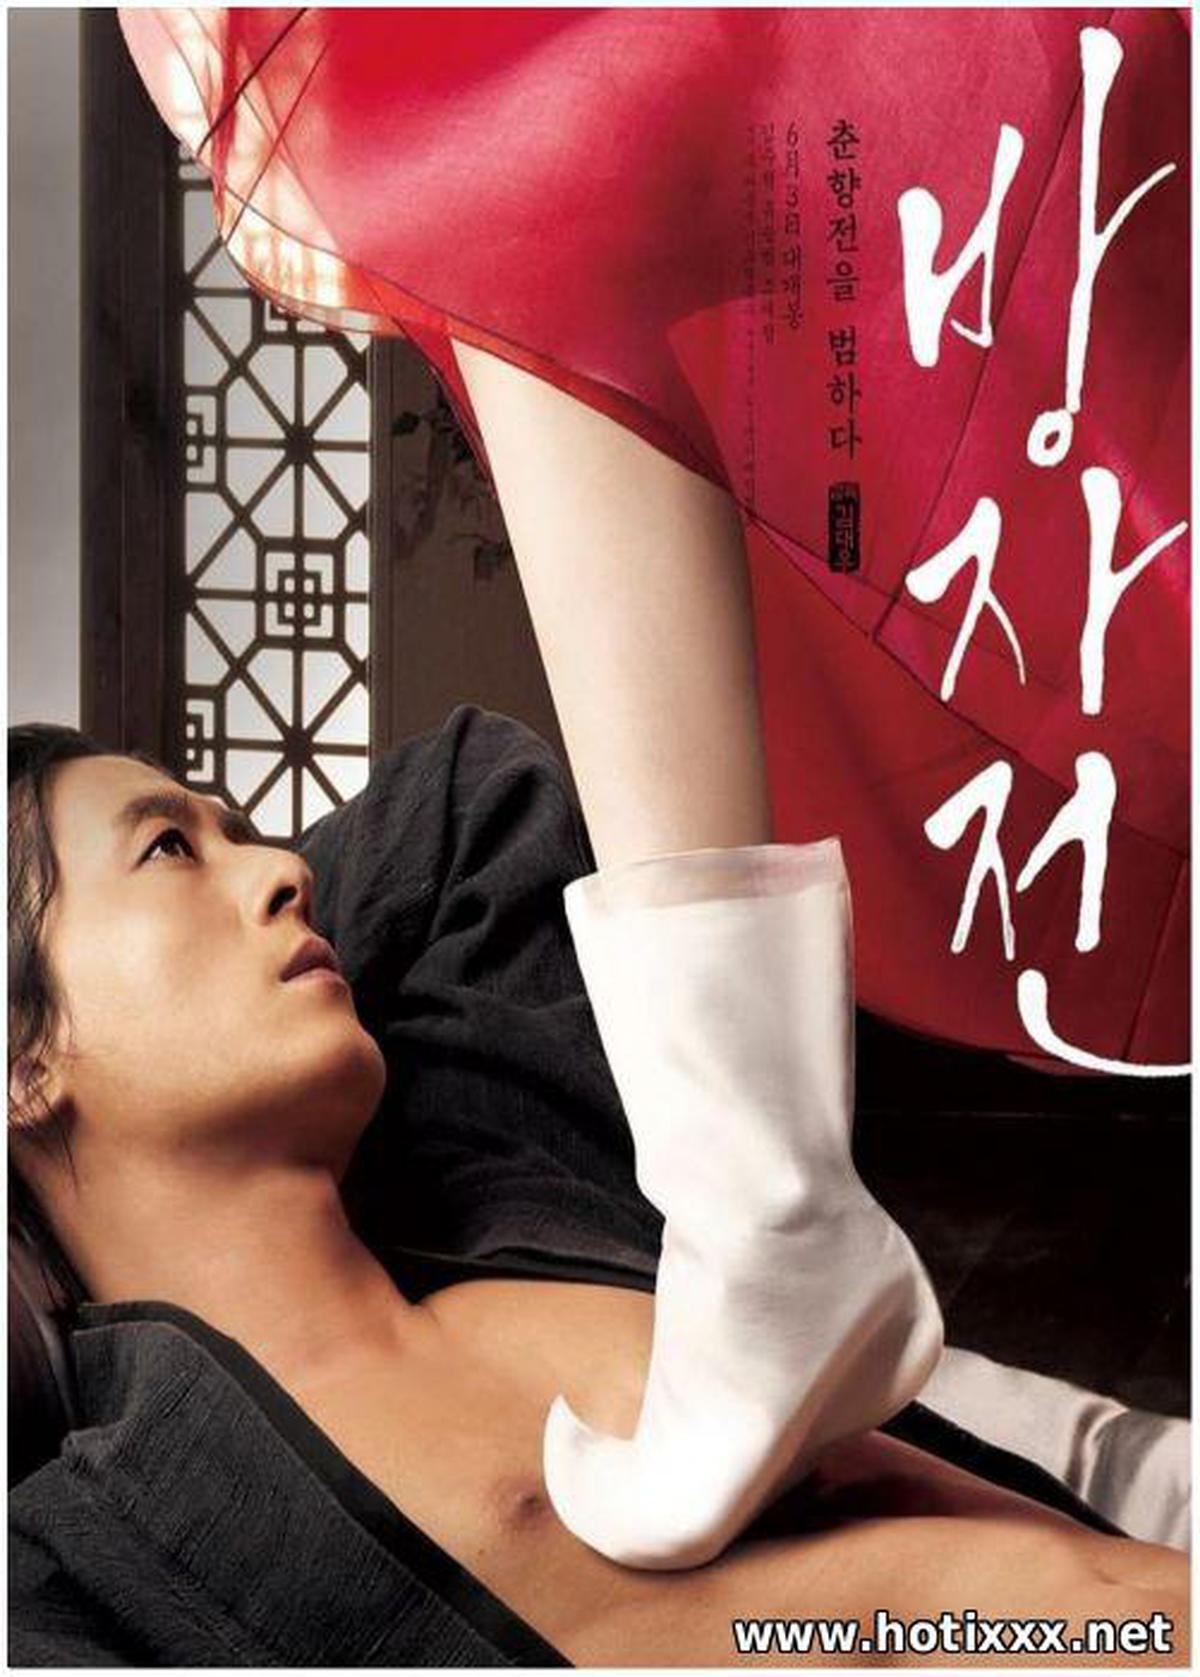 방자전 / Bang-ja-jeon / The Servant / A Story of Bang-ja / Слуга, или правдивая история Бан-чжа (2010)